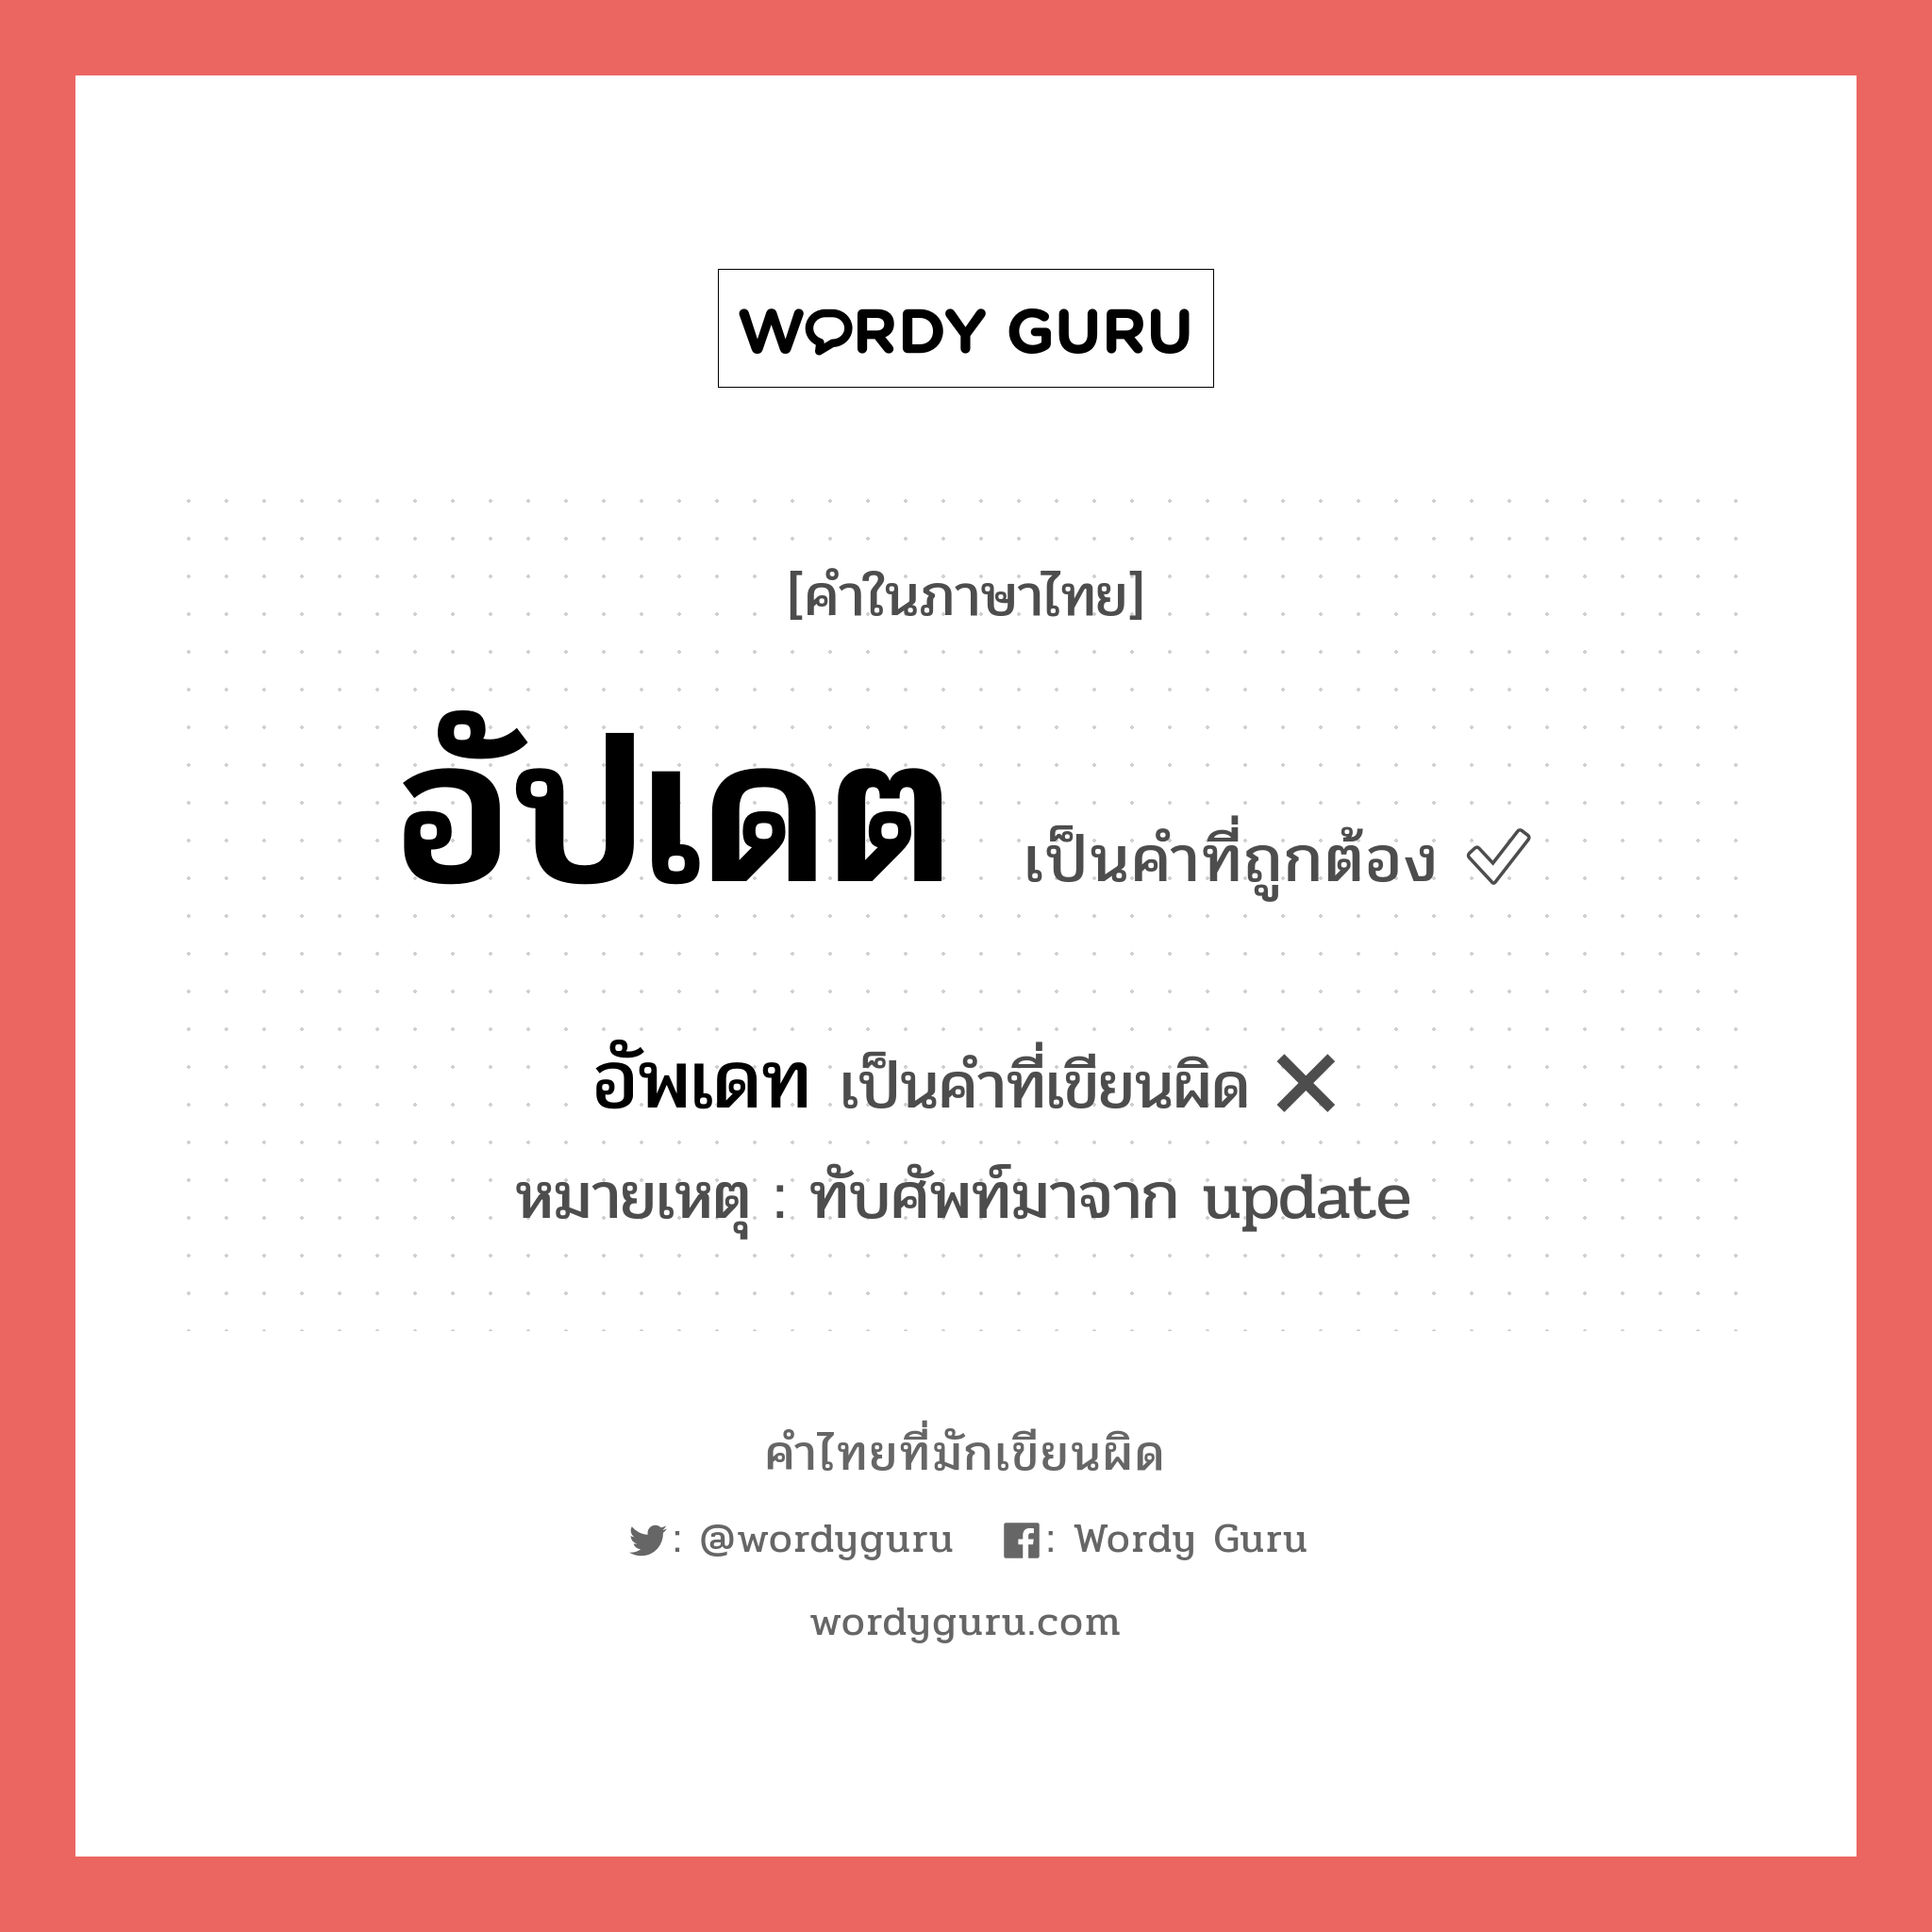 อัปเดต หรือ อัพเดท เขียนยังไง? คำไหนเขียนถูก?, คำในภาษาไทยที่มักเขียนผิด อัปเดต คำที่ผิด ❌ อัพเดท หมายเหตุ ทับศัพท์มาจาก update